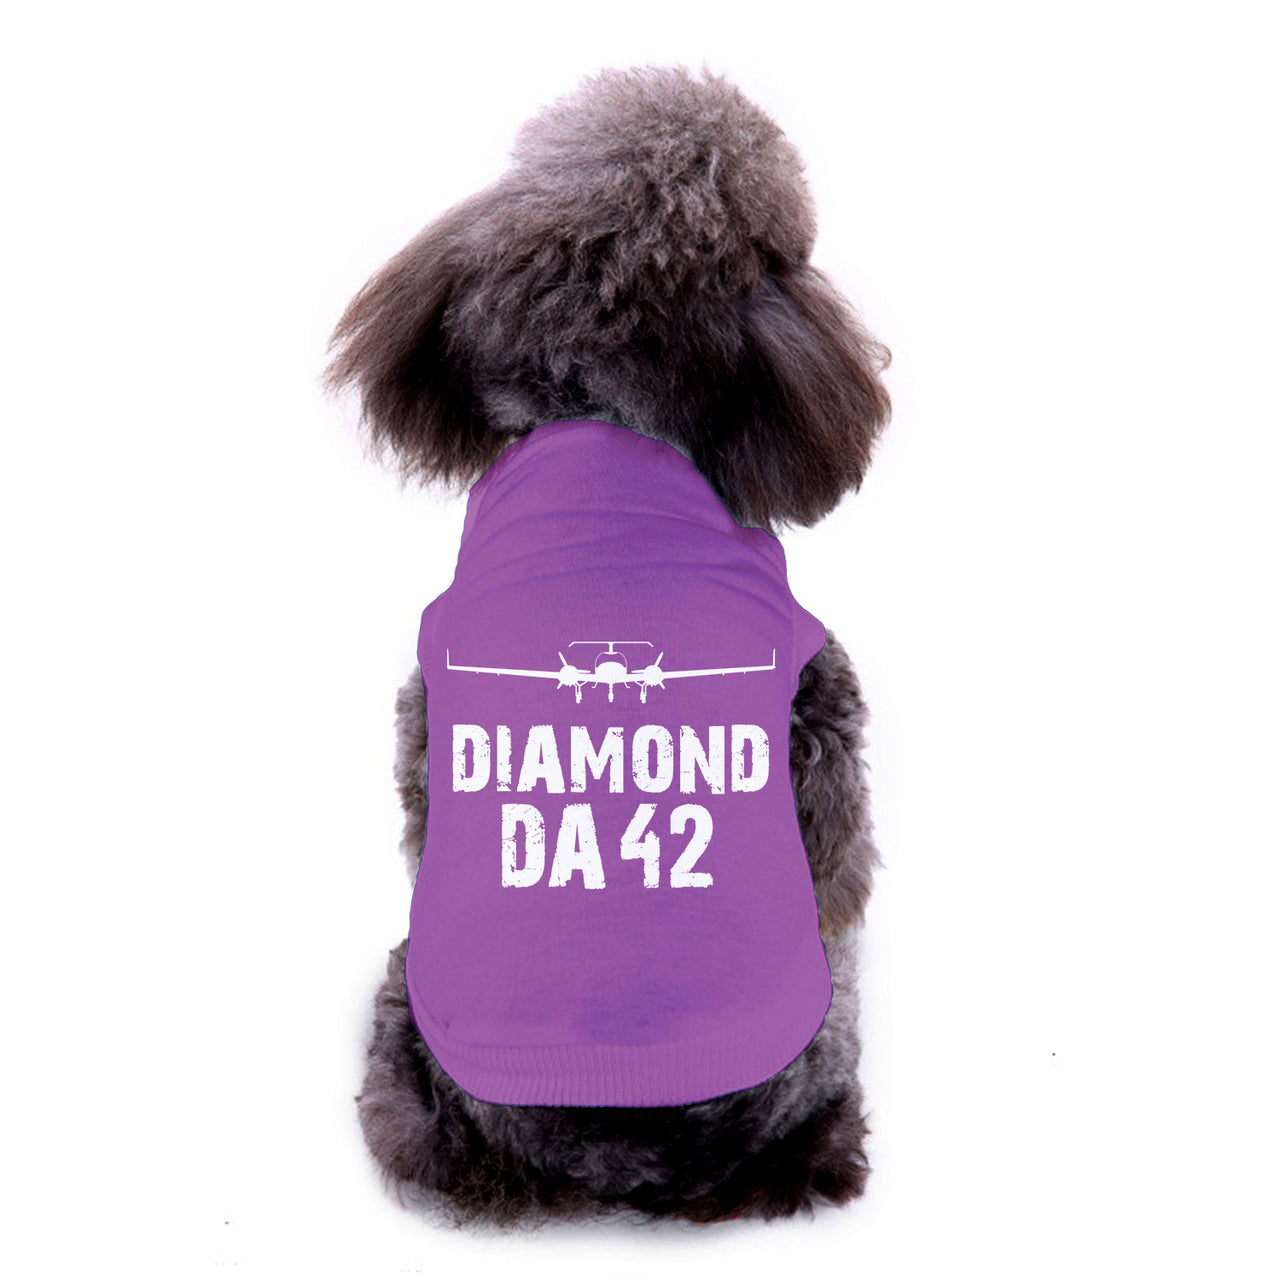 Diamond DA42 & Plane Designed Dog Pet Vests